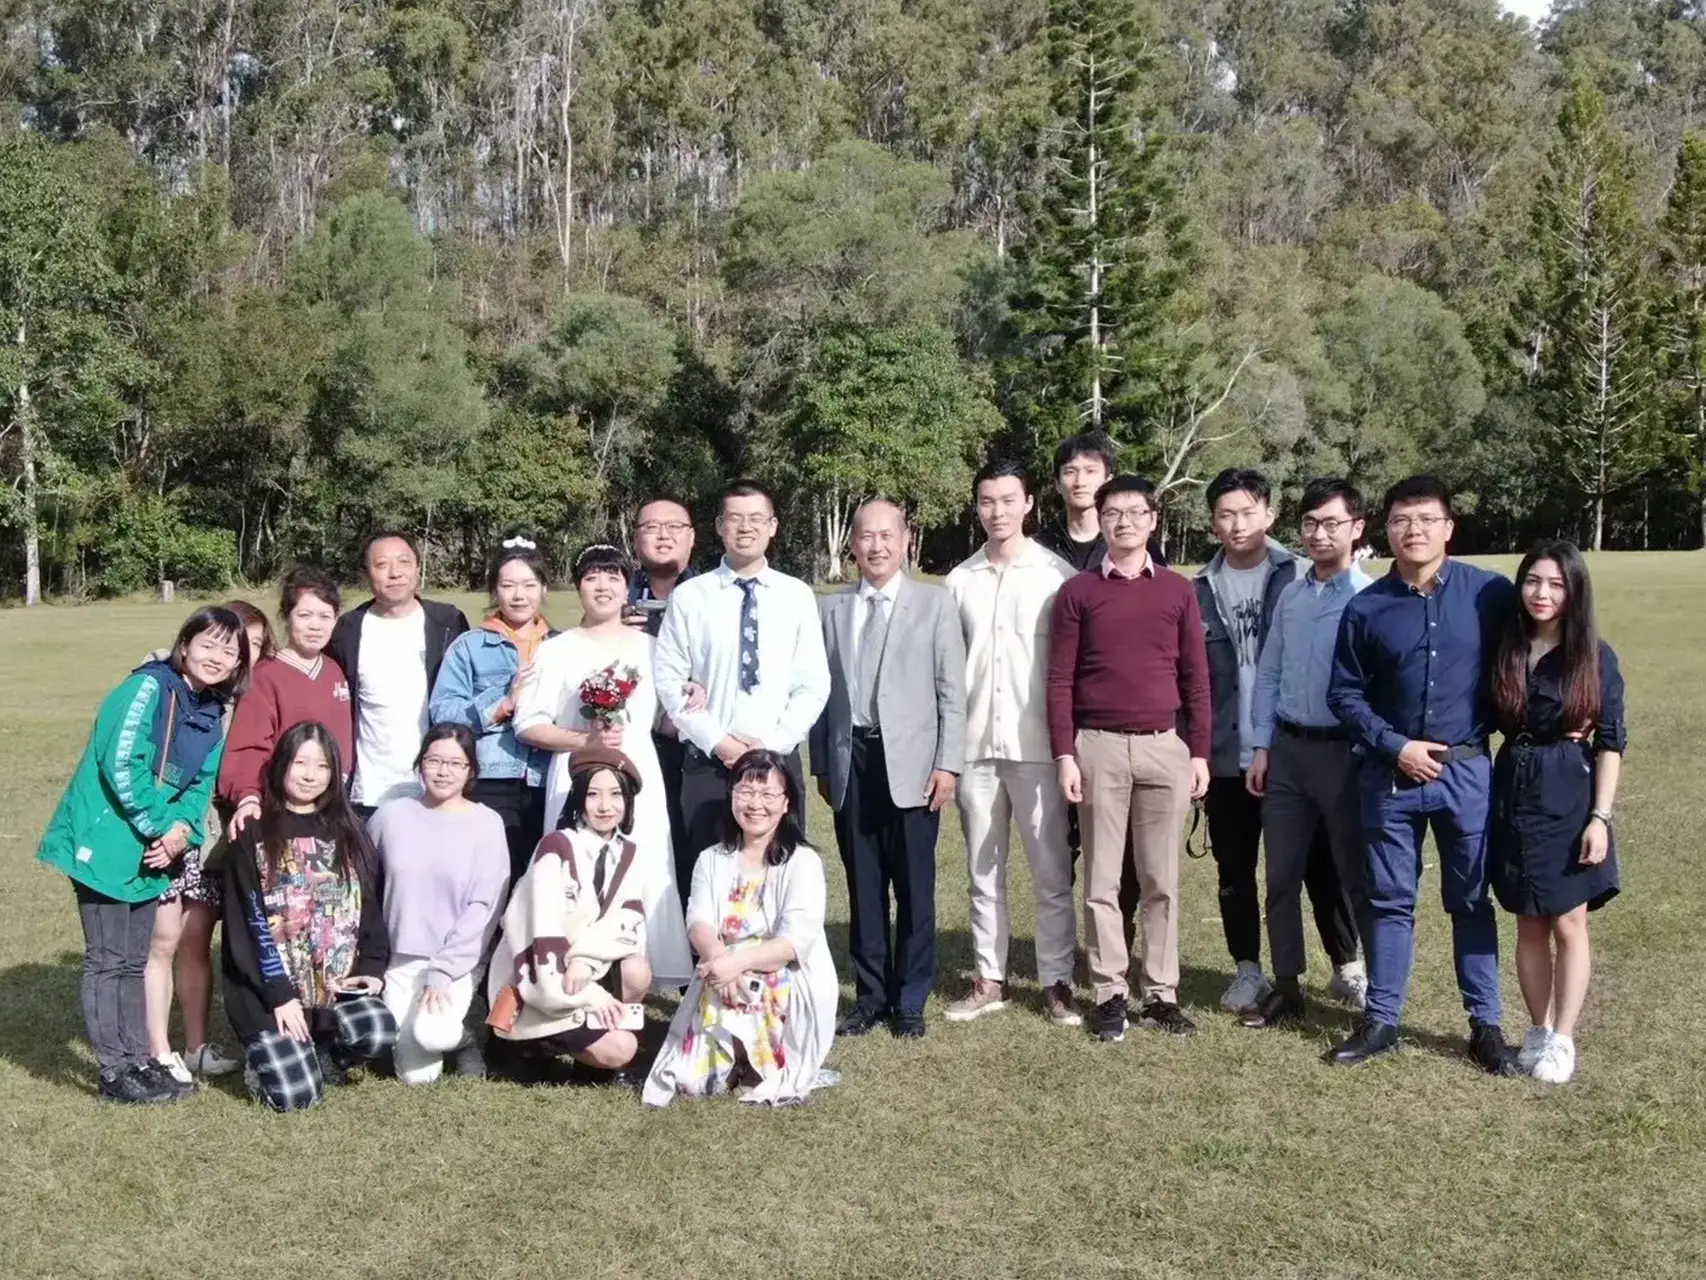 Sunnybank-wedding-group-photo